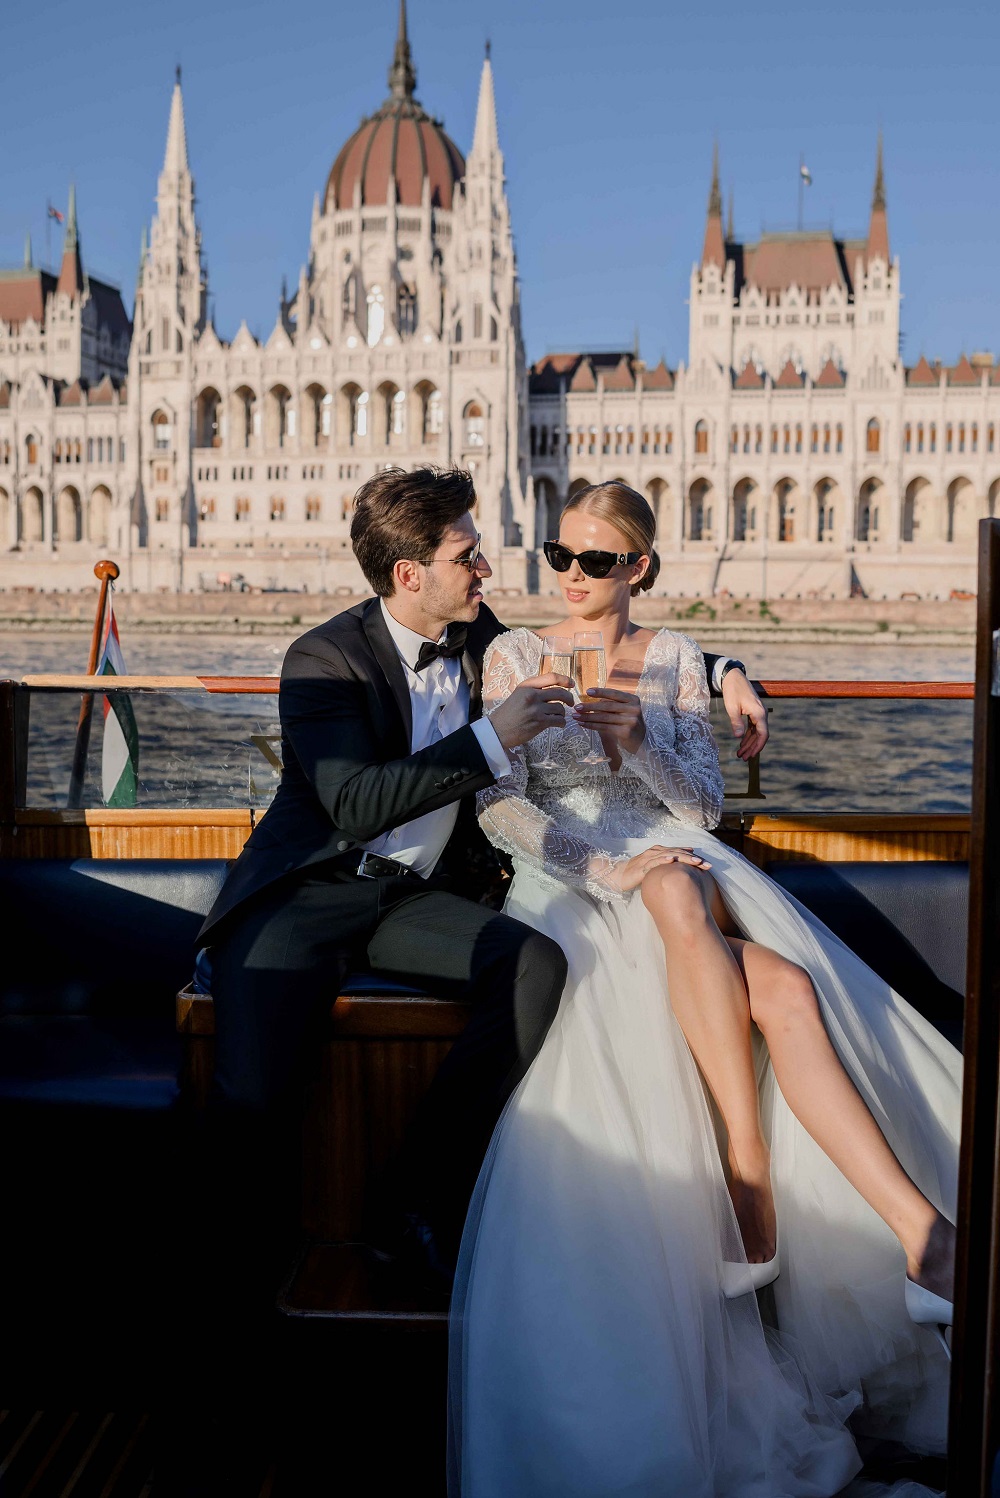 Budapest wedding styled shoot, Photo: Alex Feyer